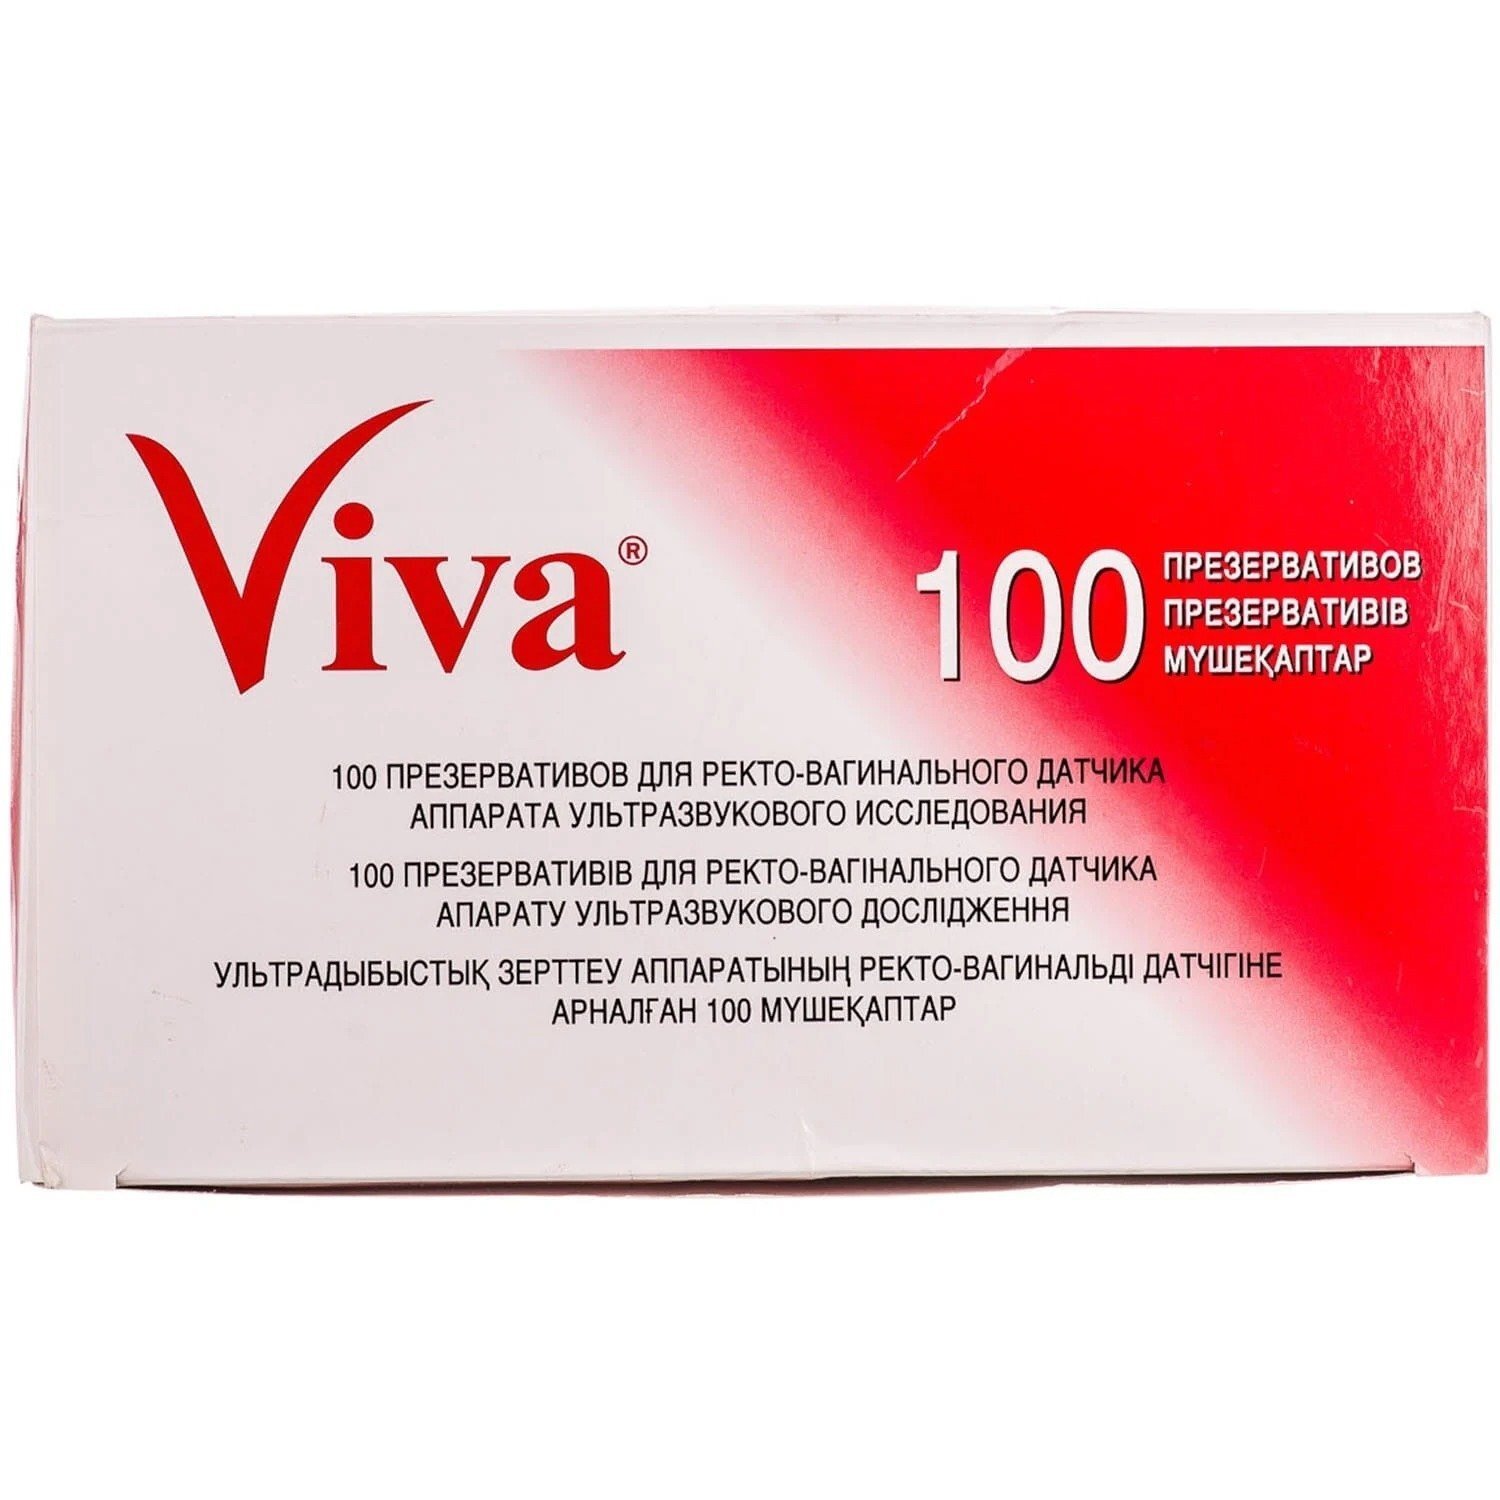 Презерватив VIVA для УЗИ №100 фото 1